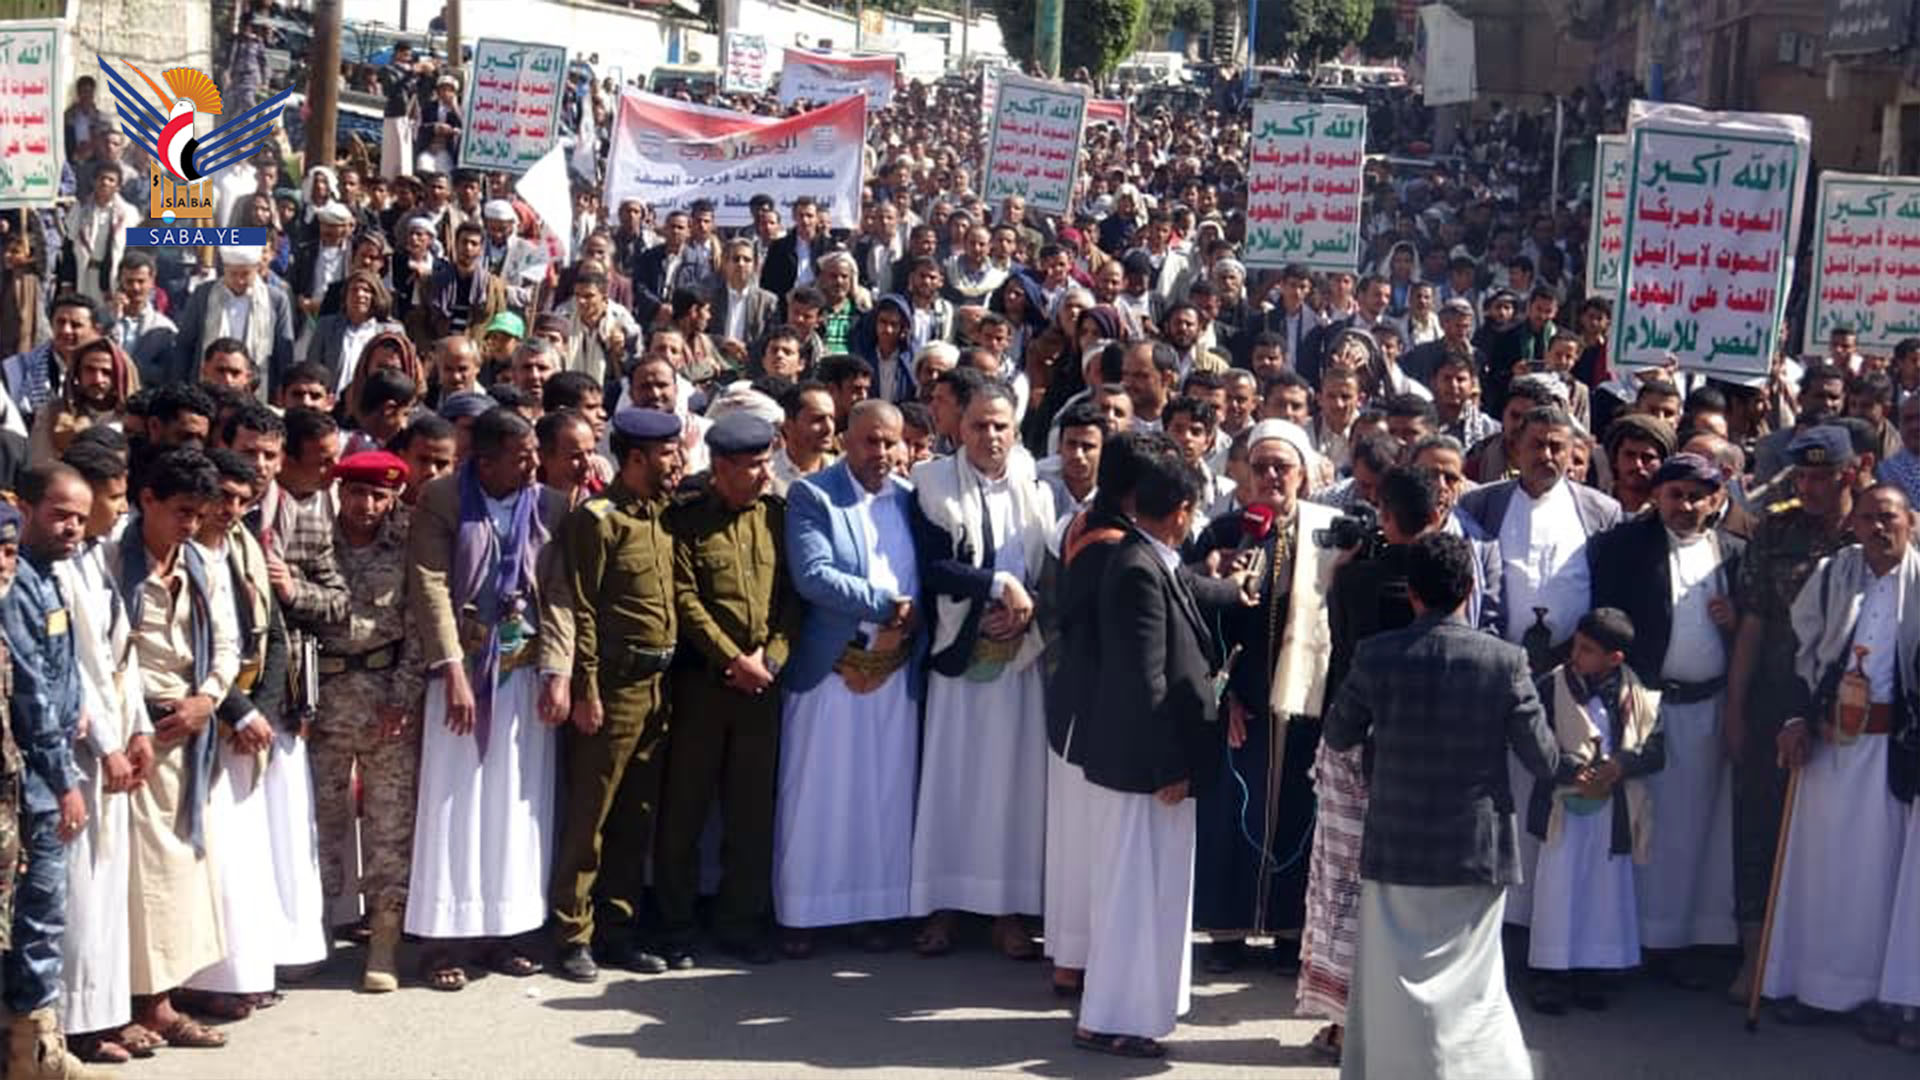 مسيرات جماهيرية حاشدة في حجة تحت شعار "الحصار حرب" 